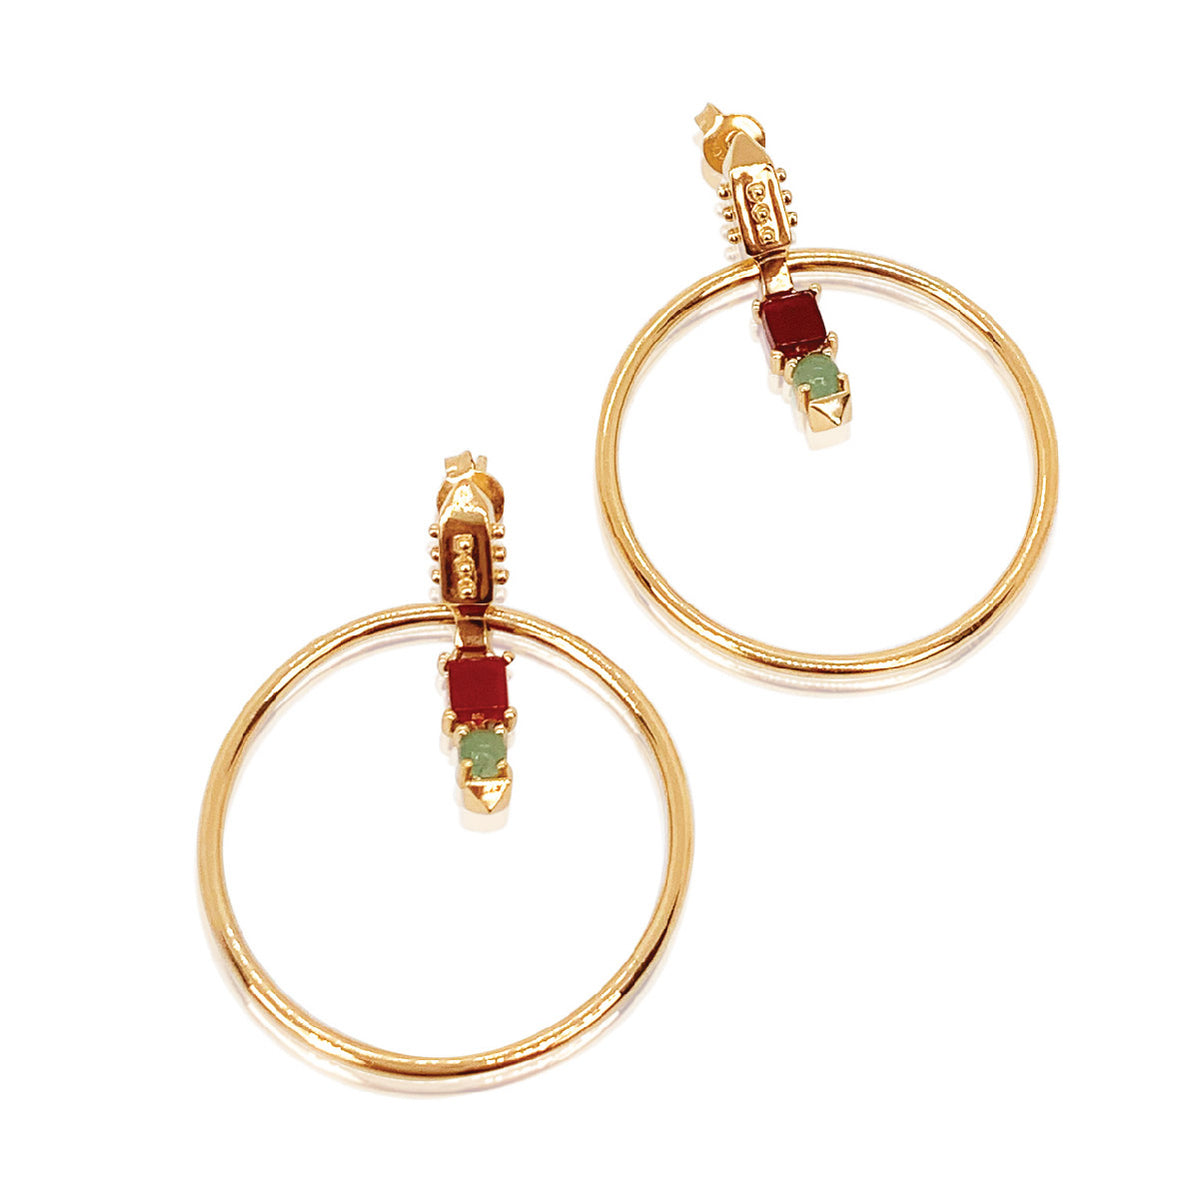 gold vermeil hoop earrings with aventurine